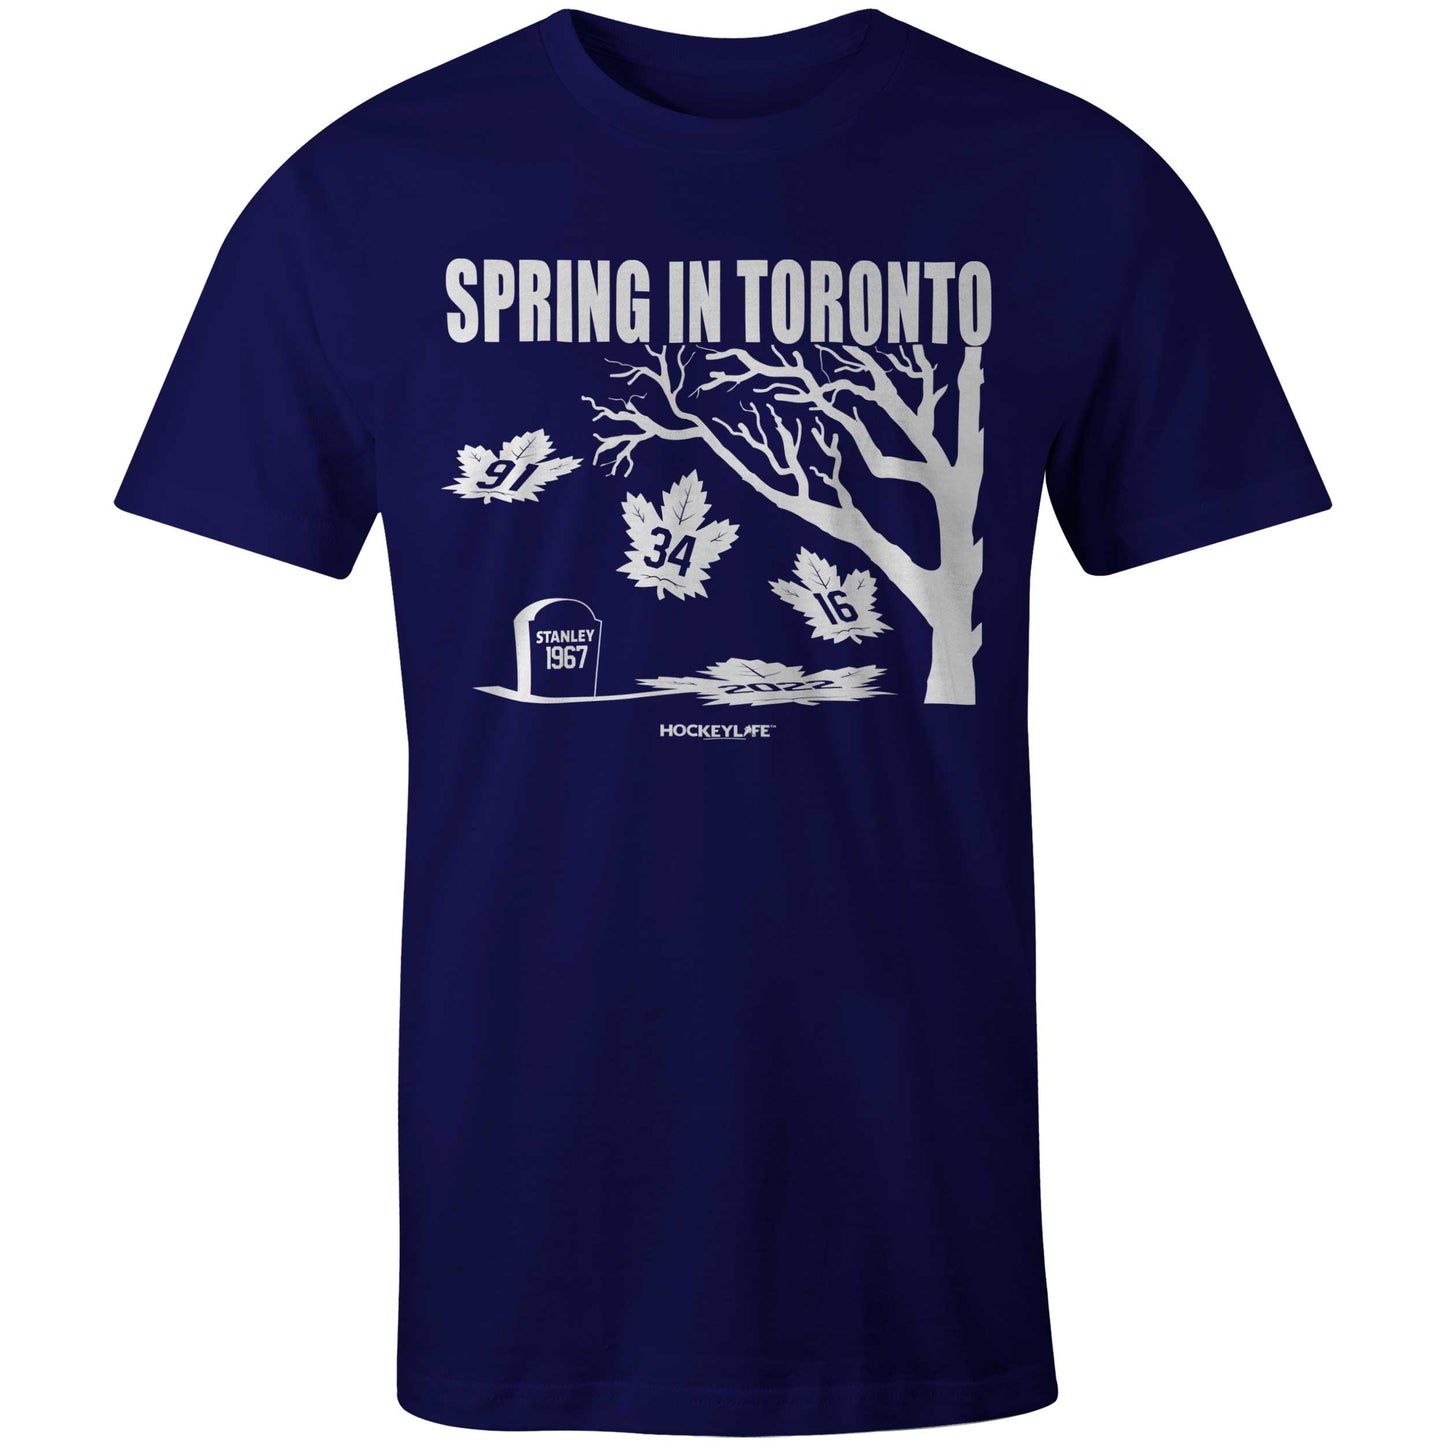 Spring in Toronto Tee Shirt